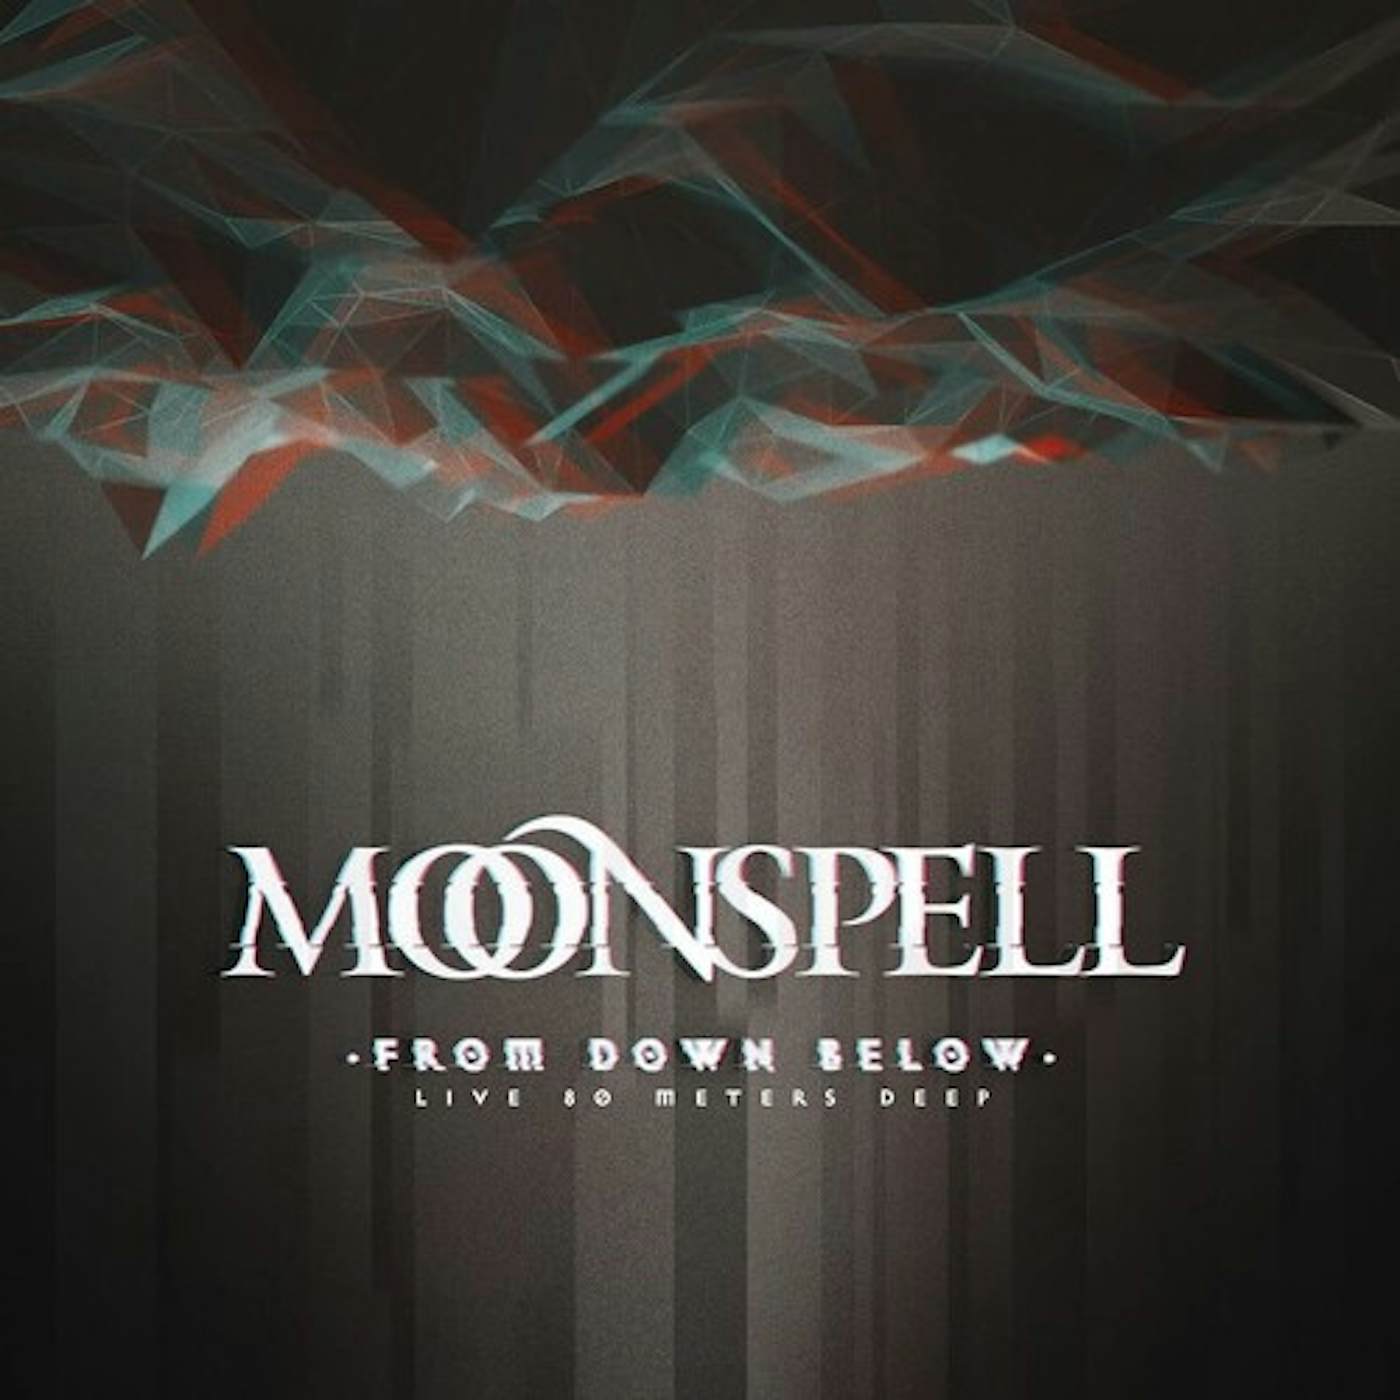 Moonspell From Down Below - Live 80 Meters Deep vinyl record